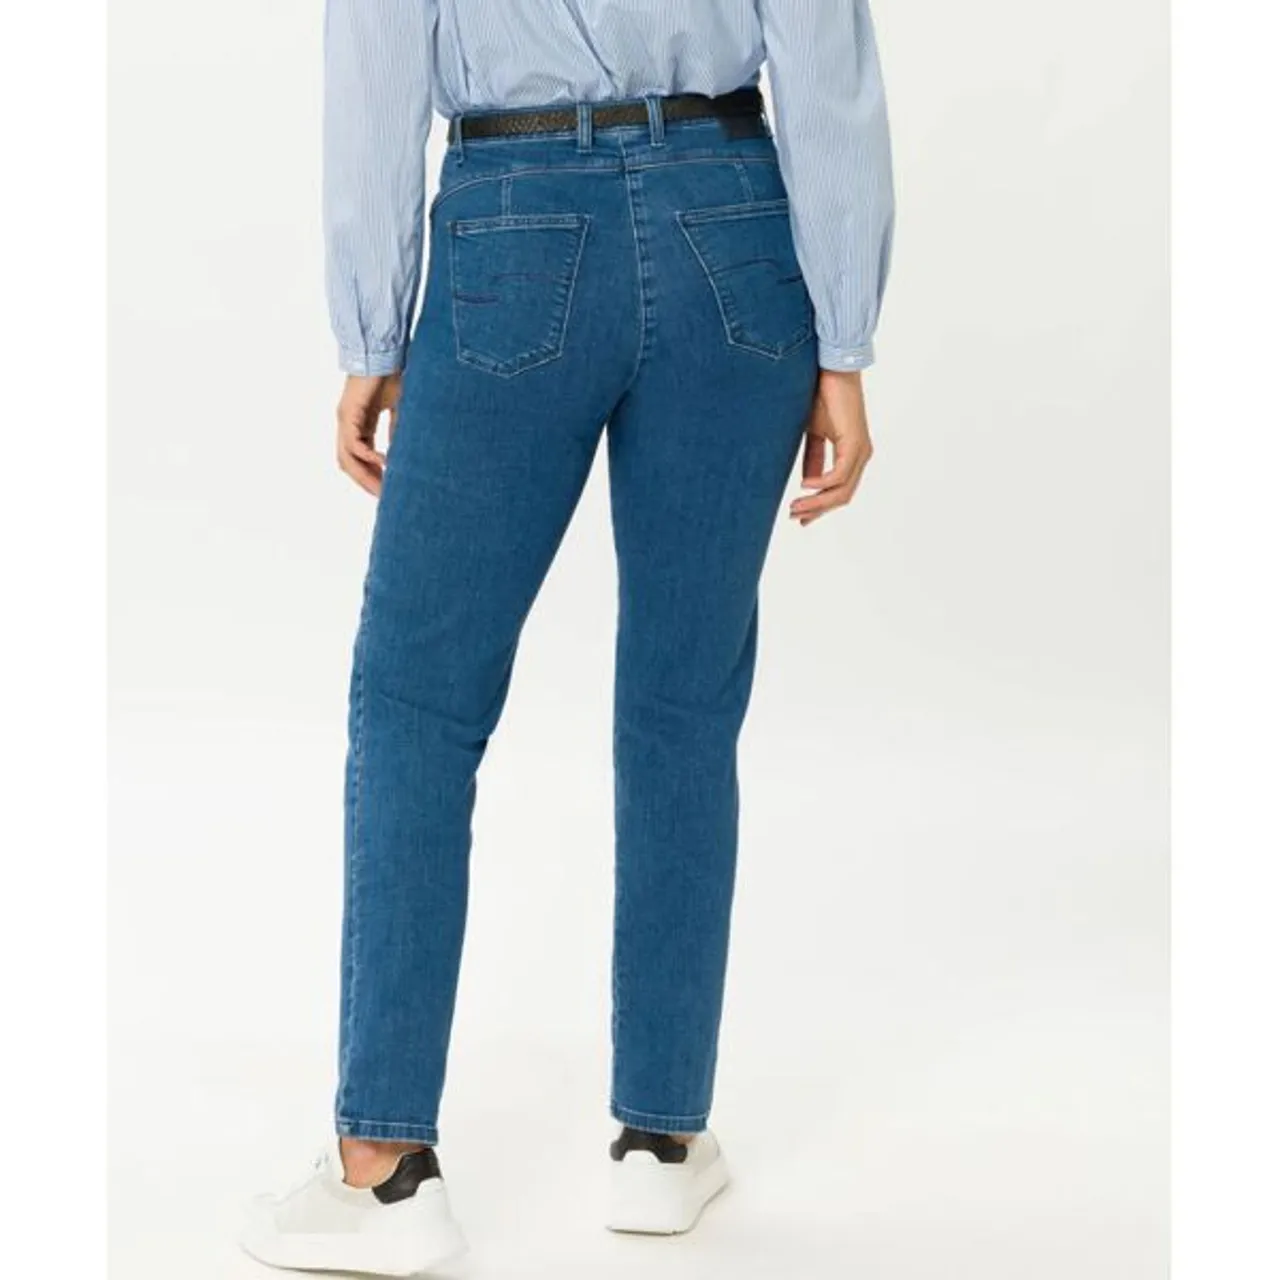 5-Pocket-Jeans RAPHAELA BY BRAX "Style CAREN NEW" Gr. 44, Normalgrößen, grau (stein) Damen Jeans 5-Pocket-Jeans